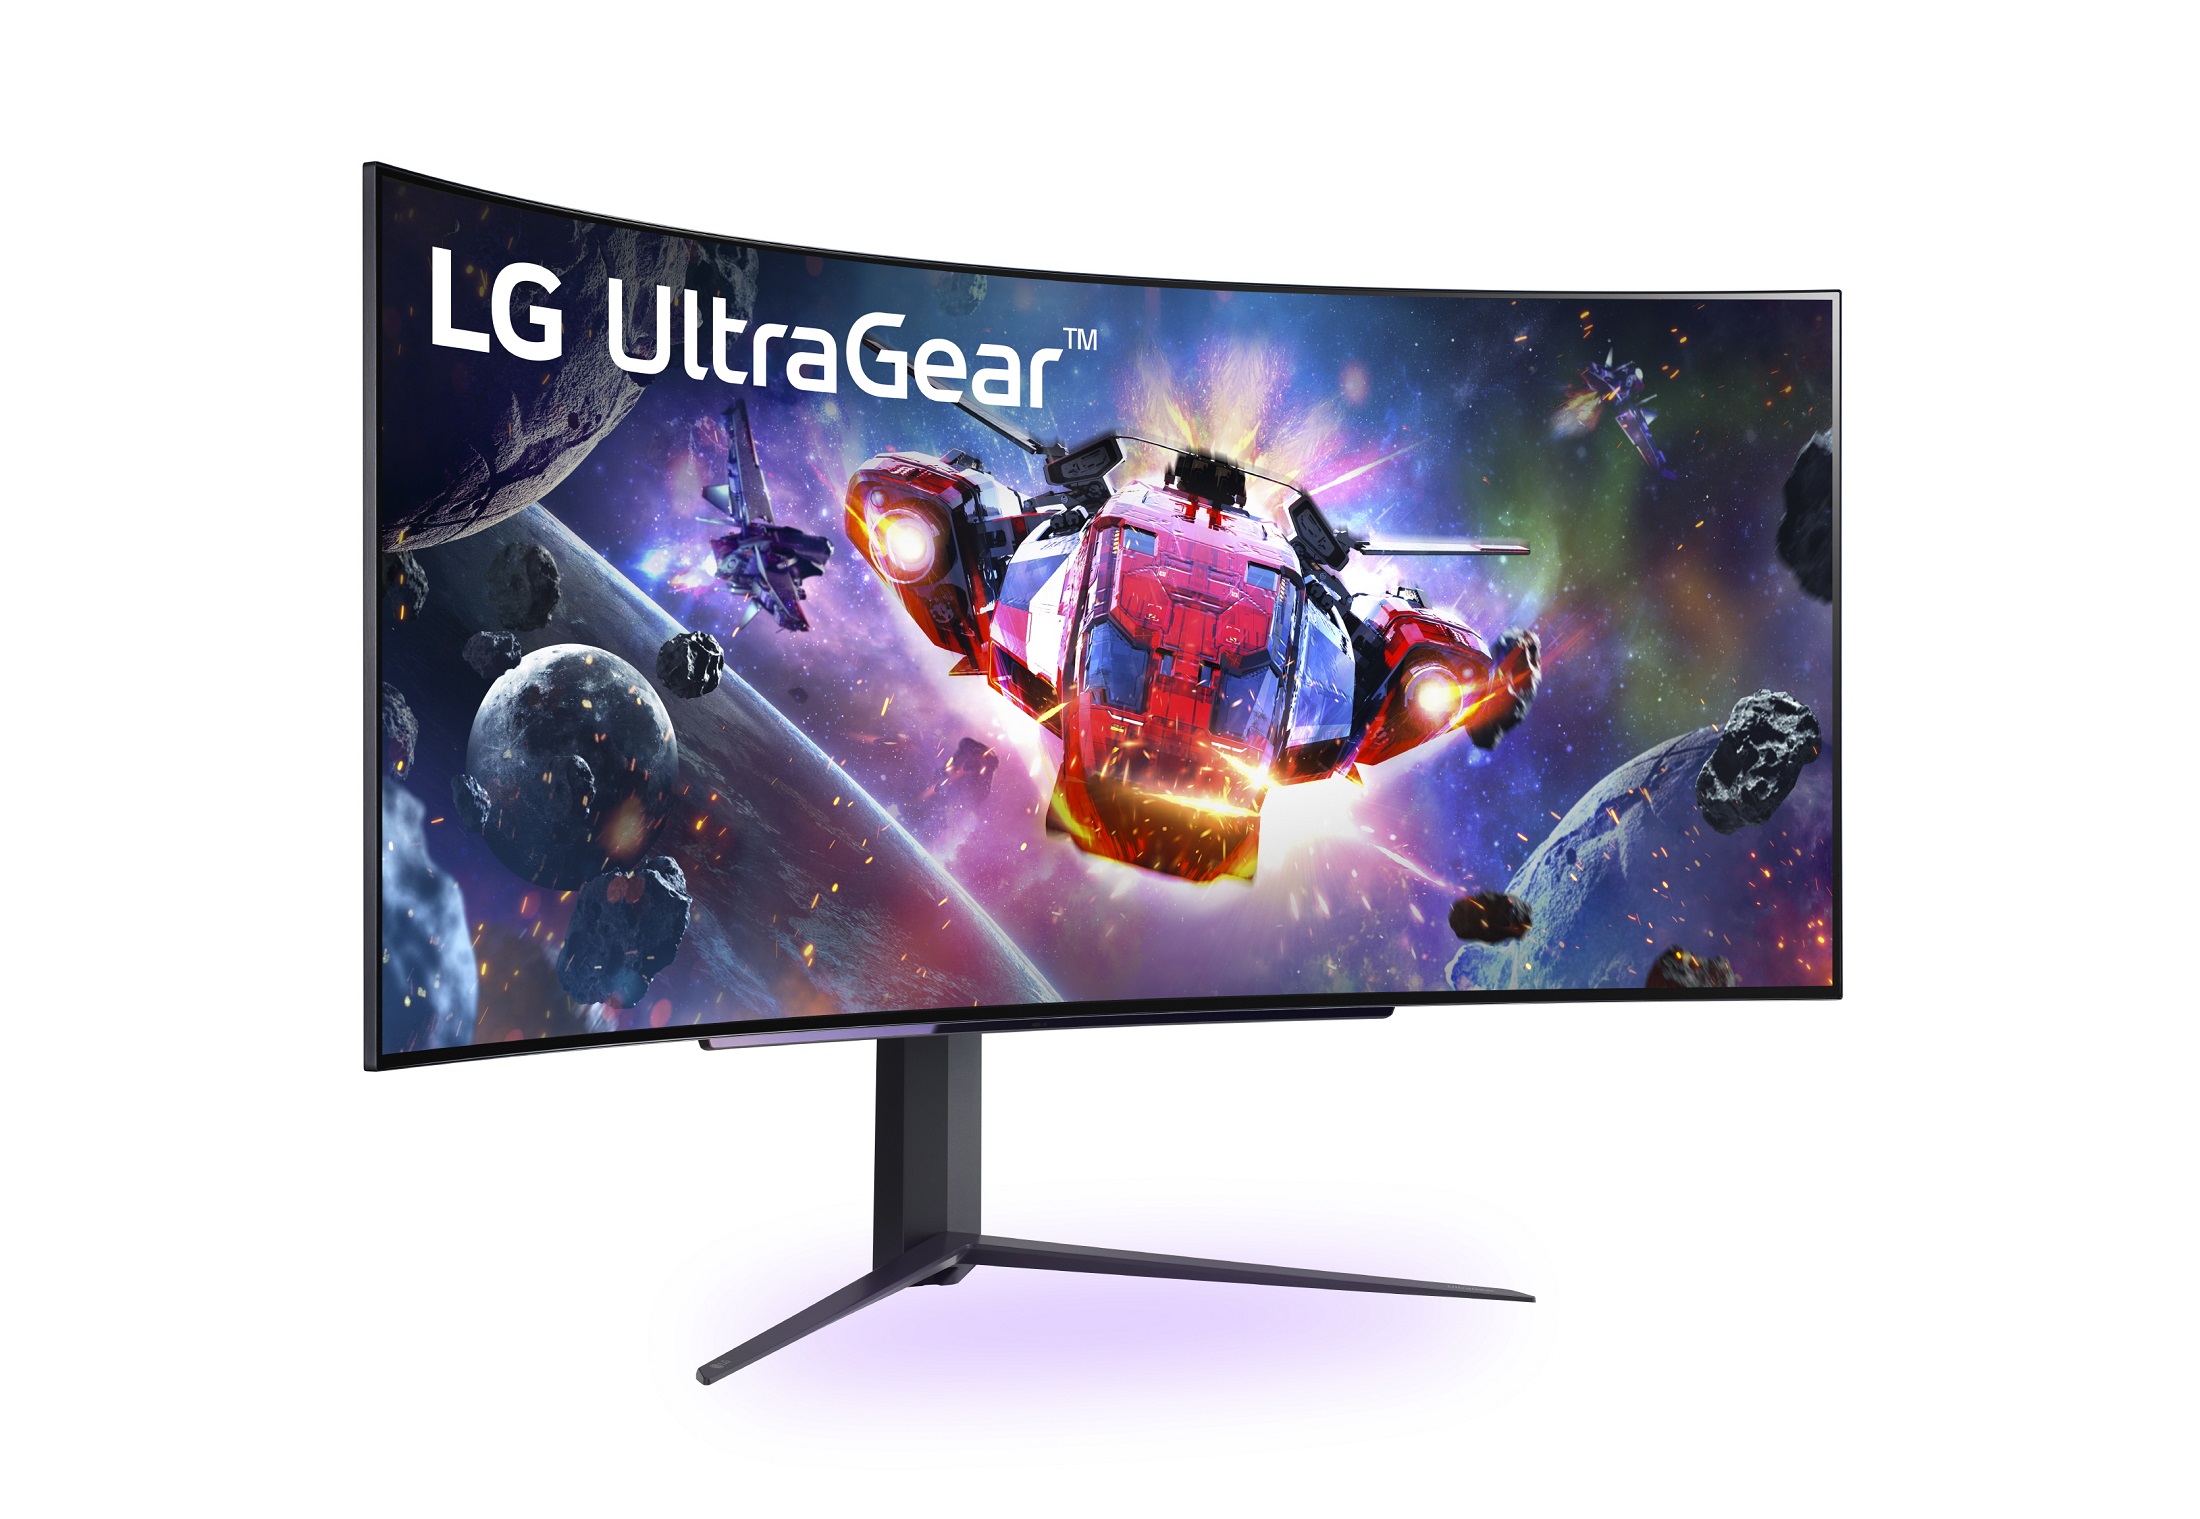 Monitor gamingowy UltraGear™ firmy LG został oficjalnym wyświetlaczem mistrzostw League of Legends EMEA Championship